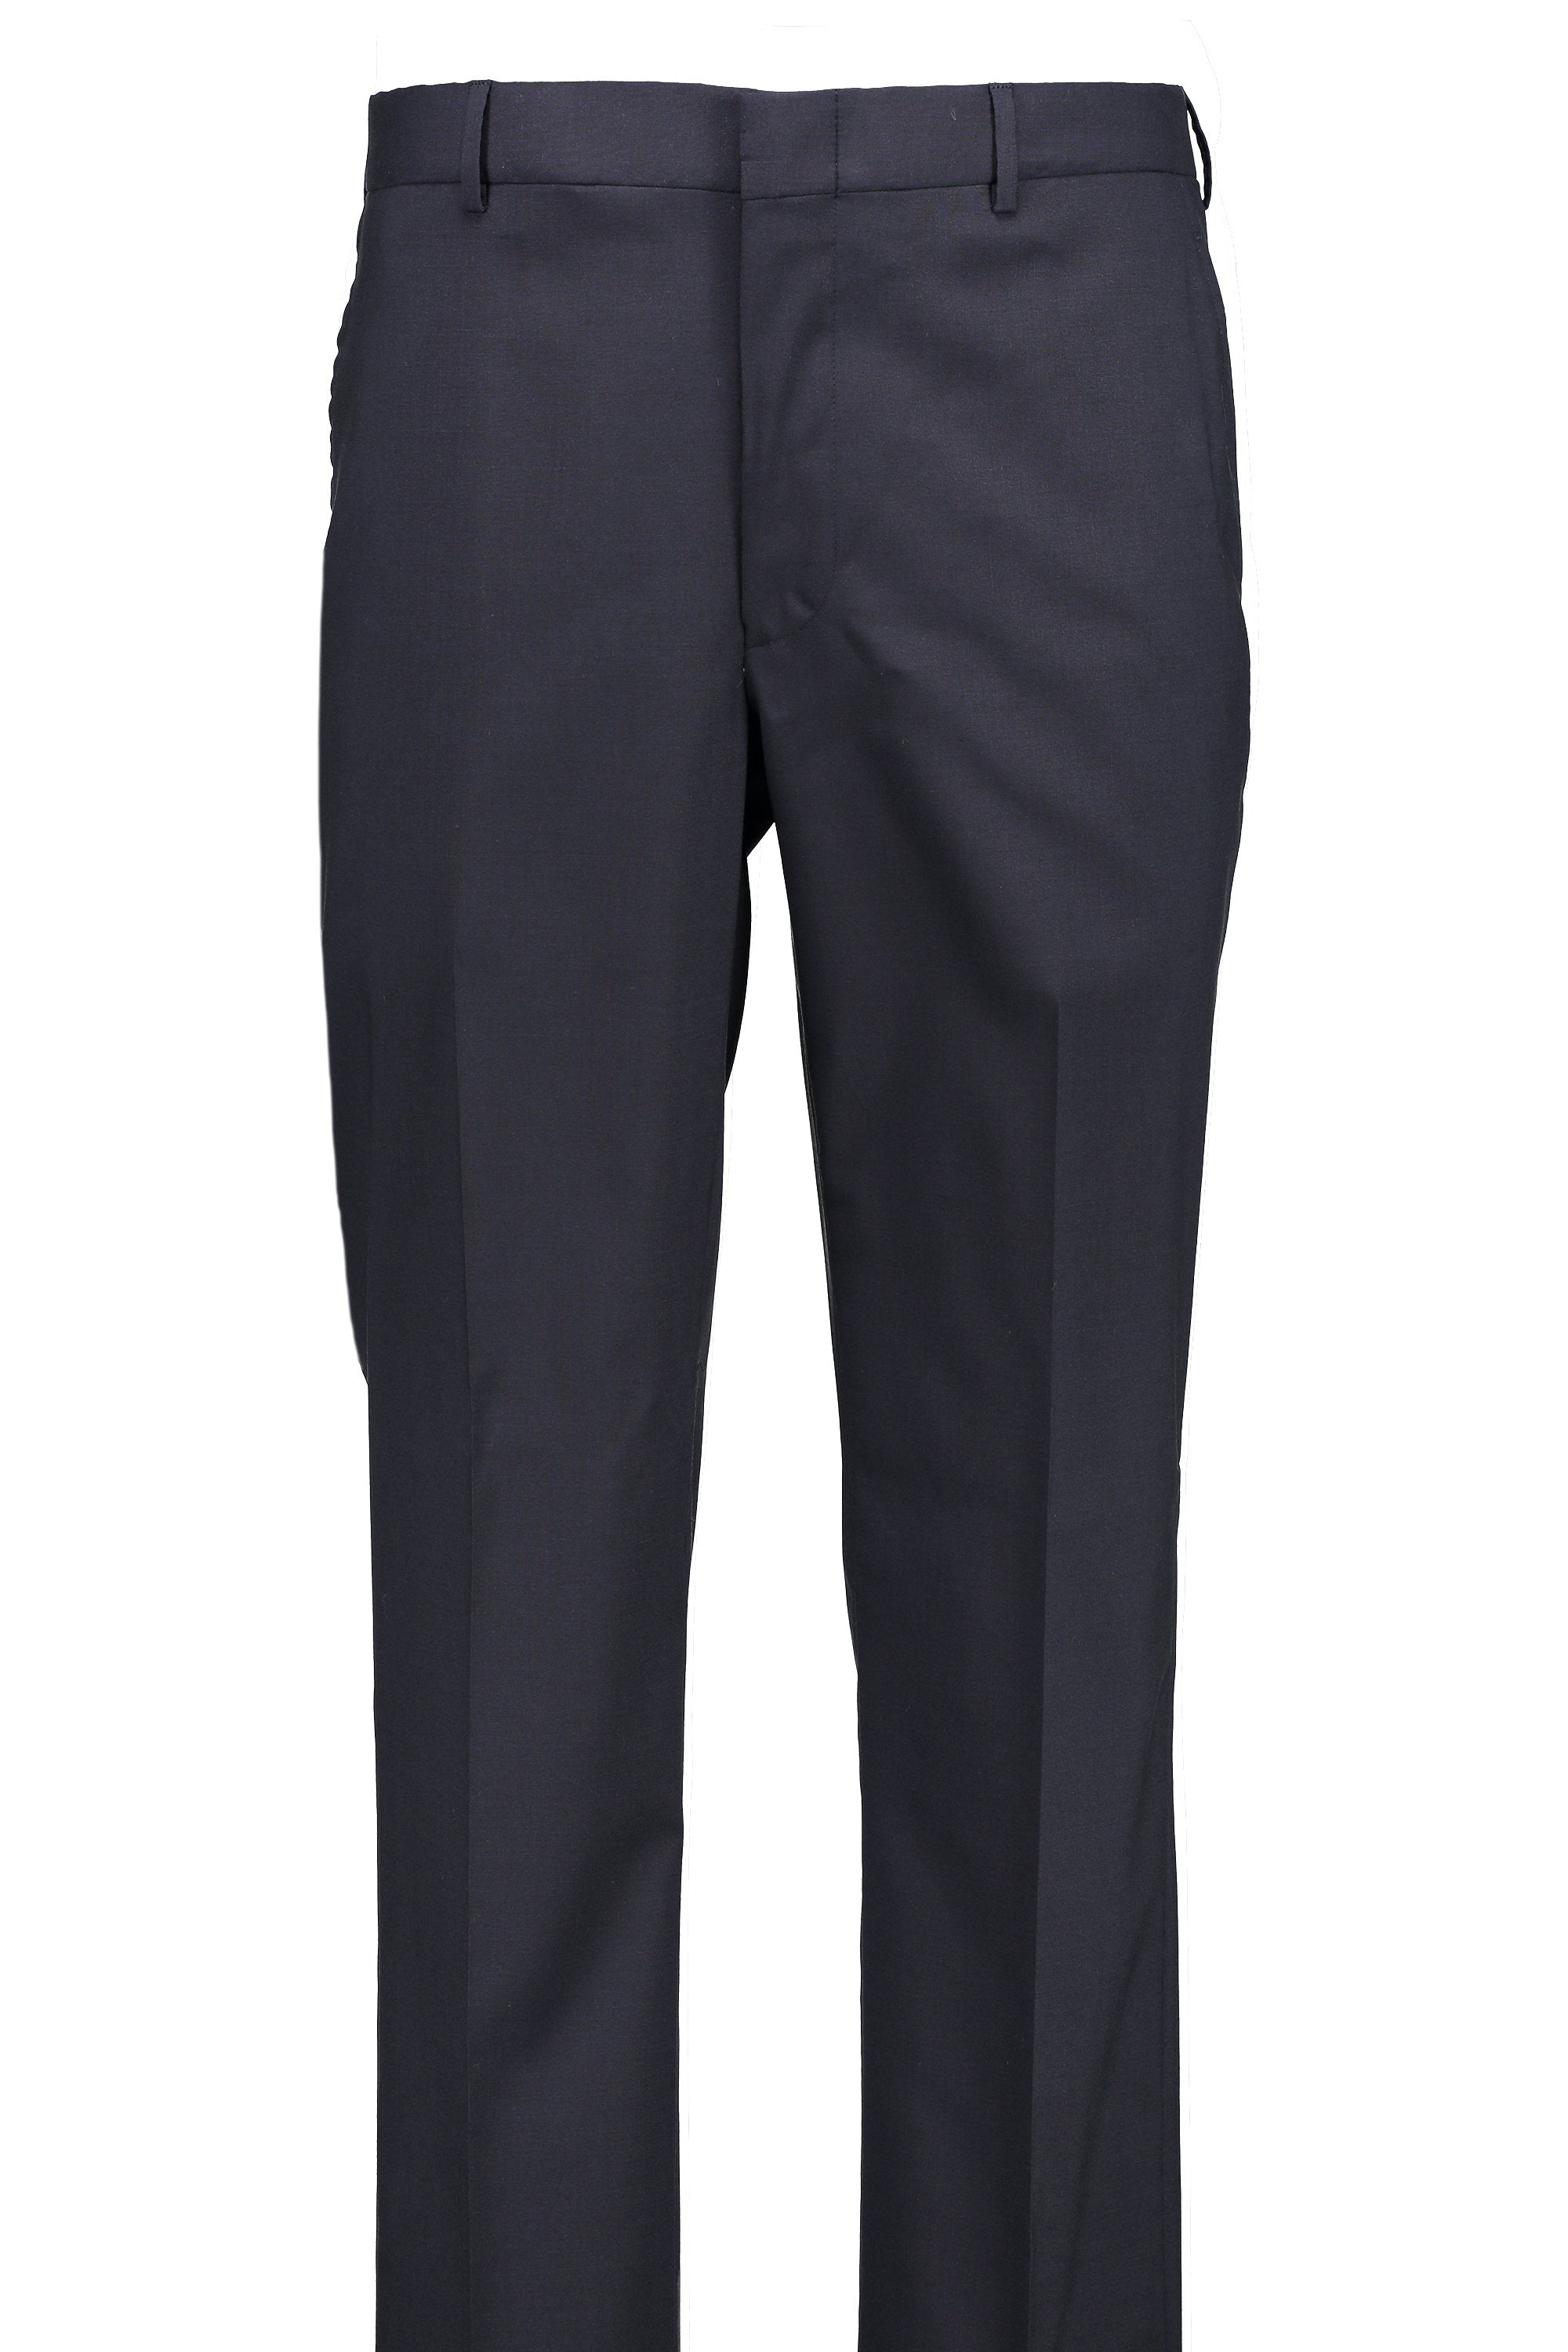 Men's Suit Separates Flat Front Pant Classic Cut - NAVY 98/2 WOOL/LYCRA SUPER100